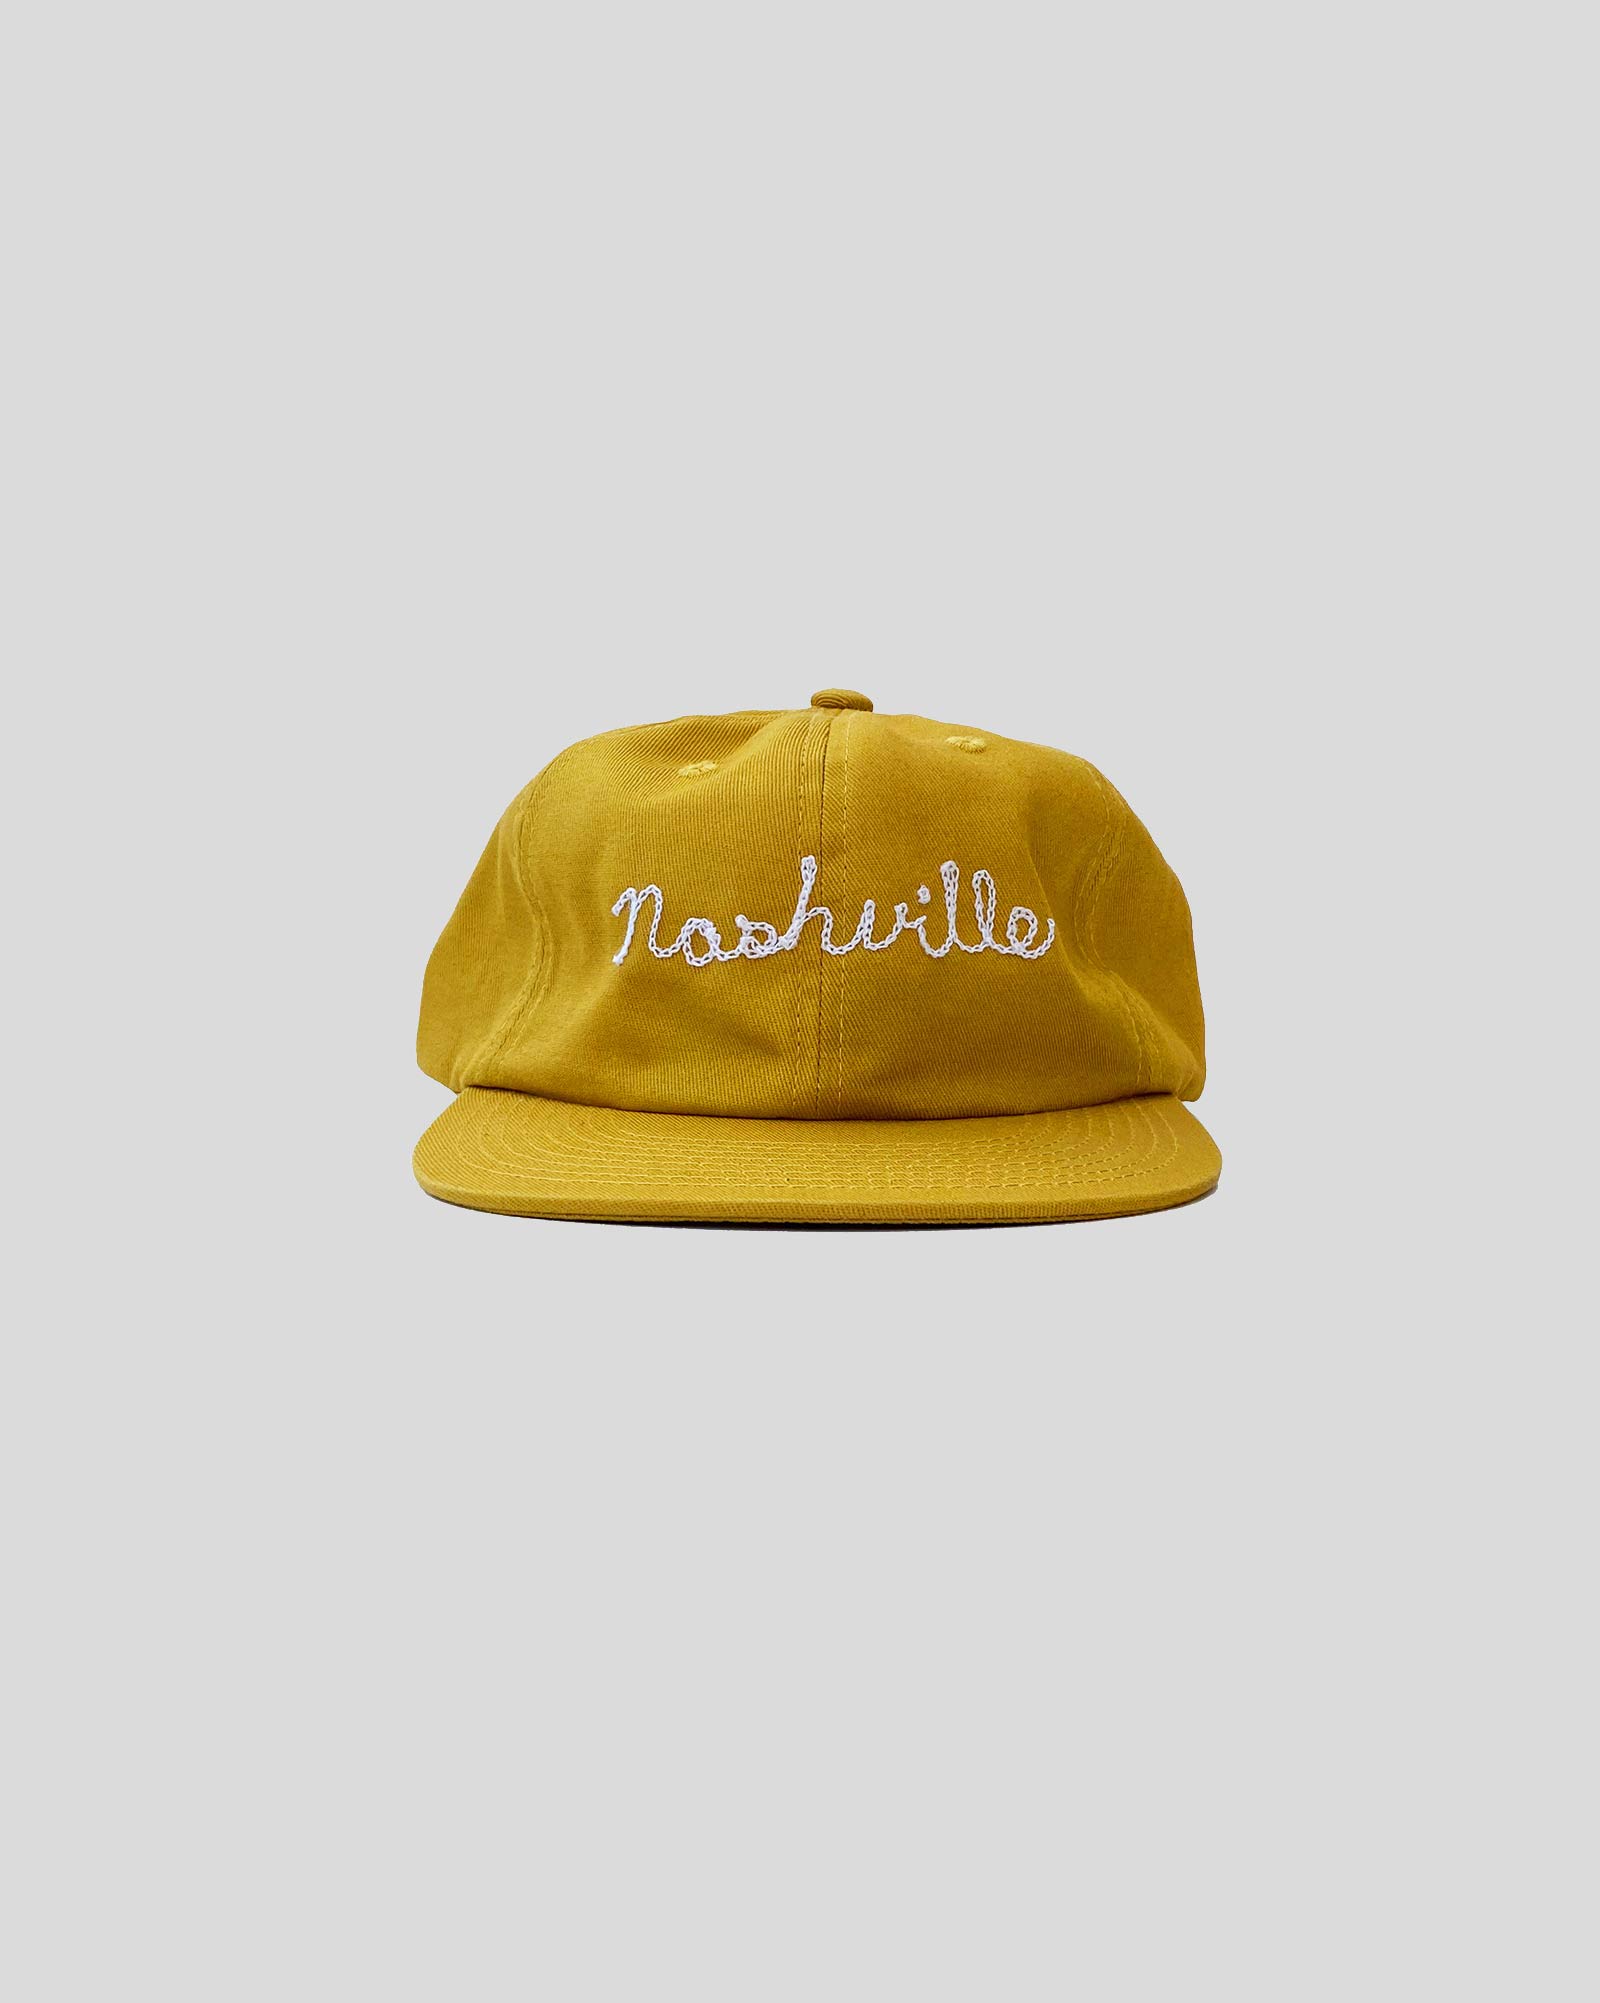 Nashville Chainstitch Hat